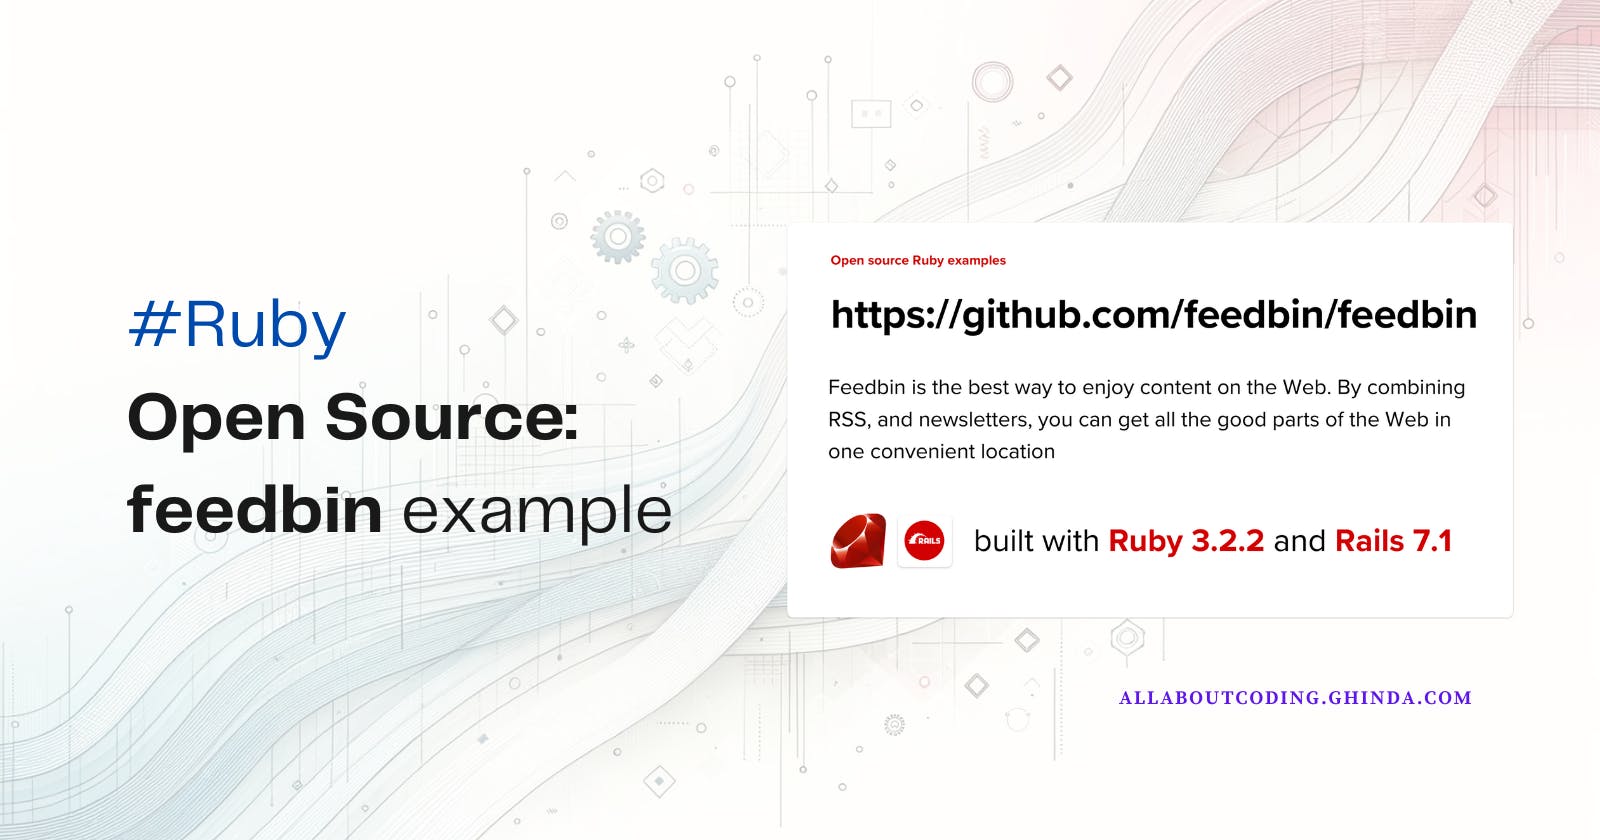 Ruby open source: feedbin